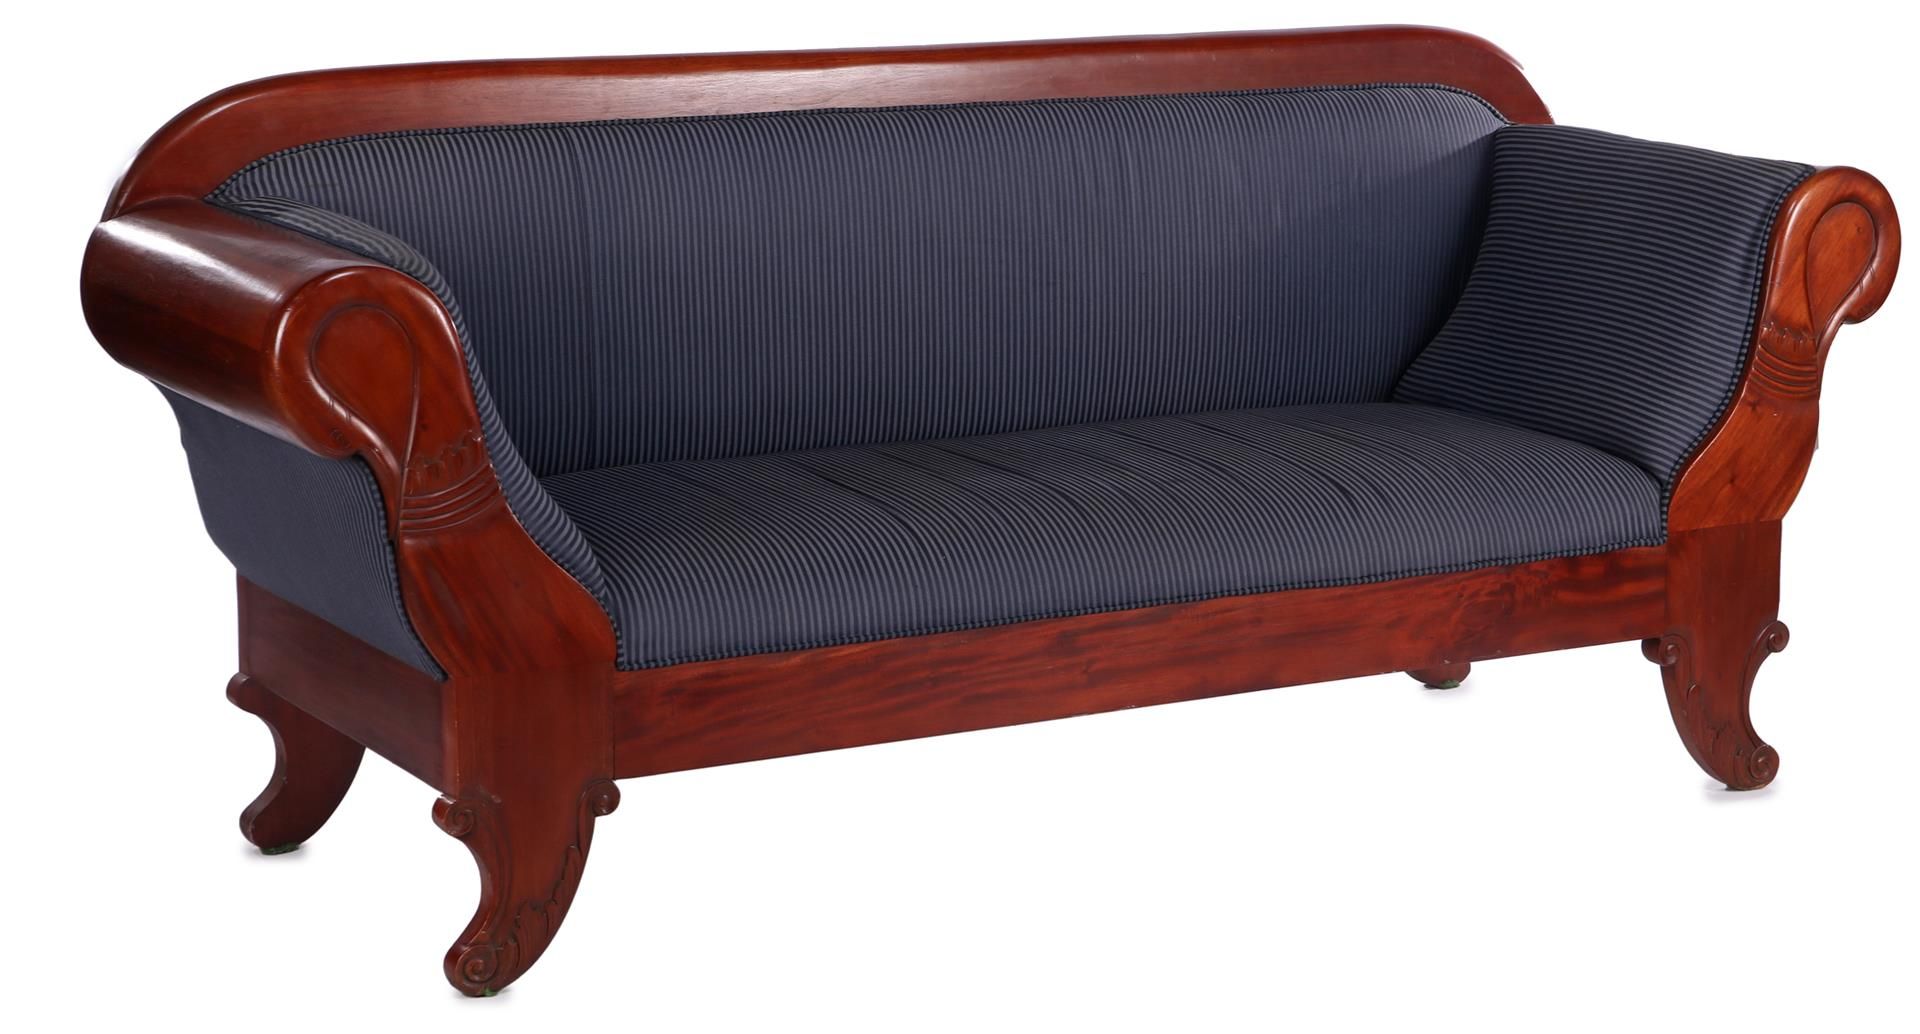 Mahogany sofa with blue striped upholstery